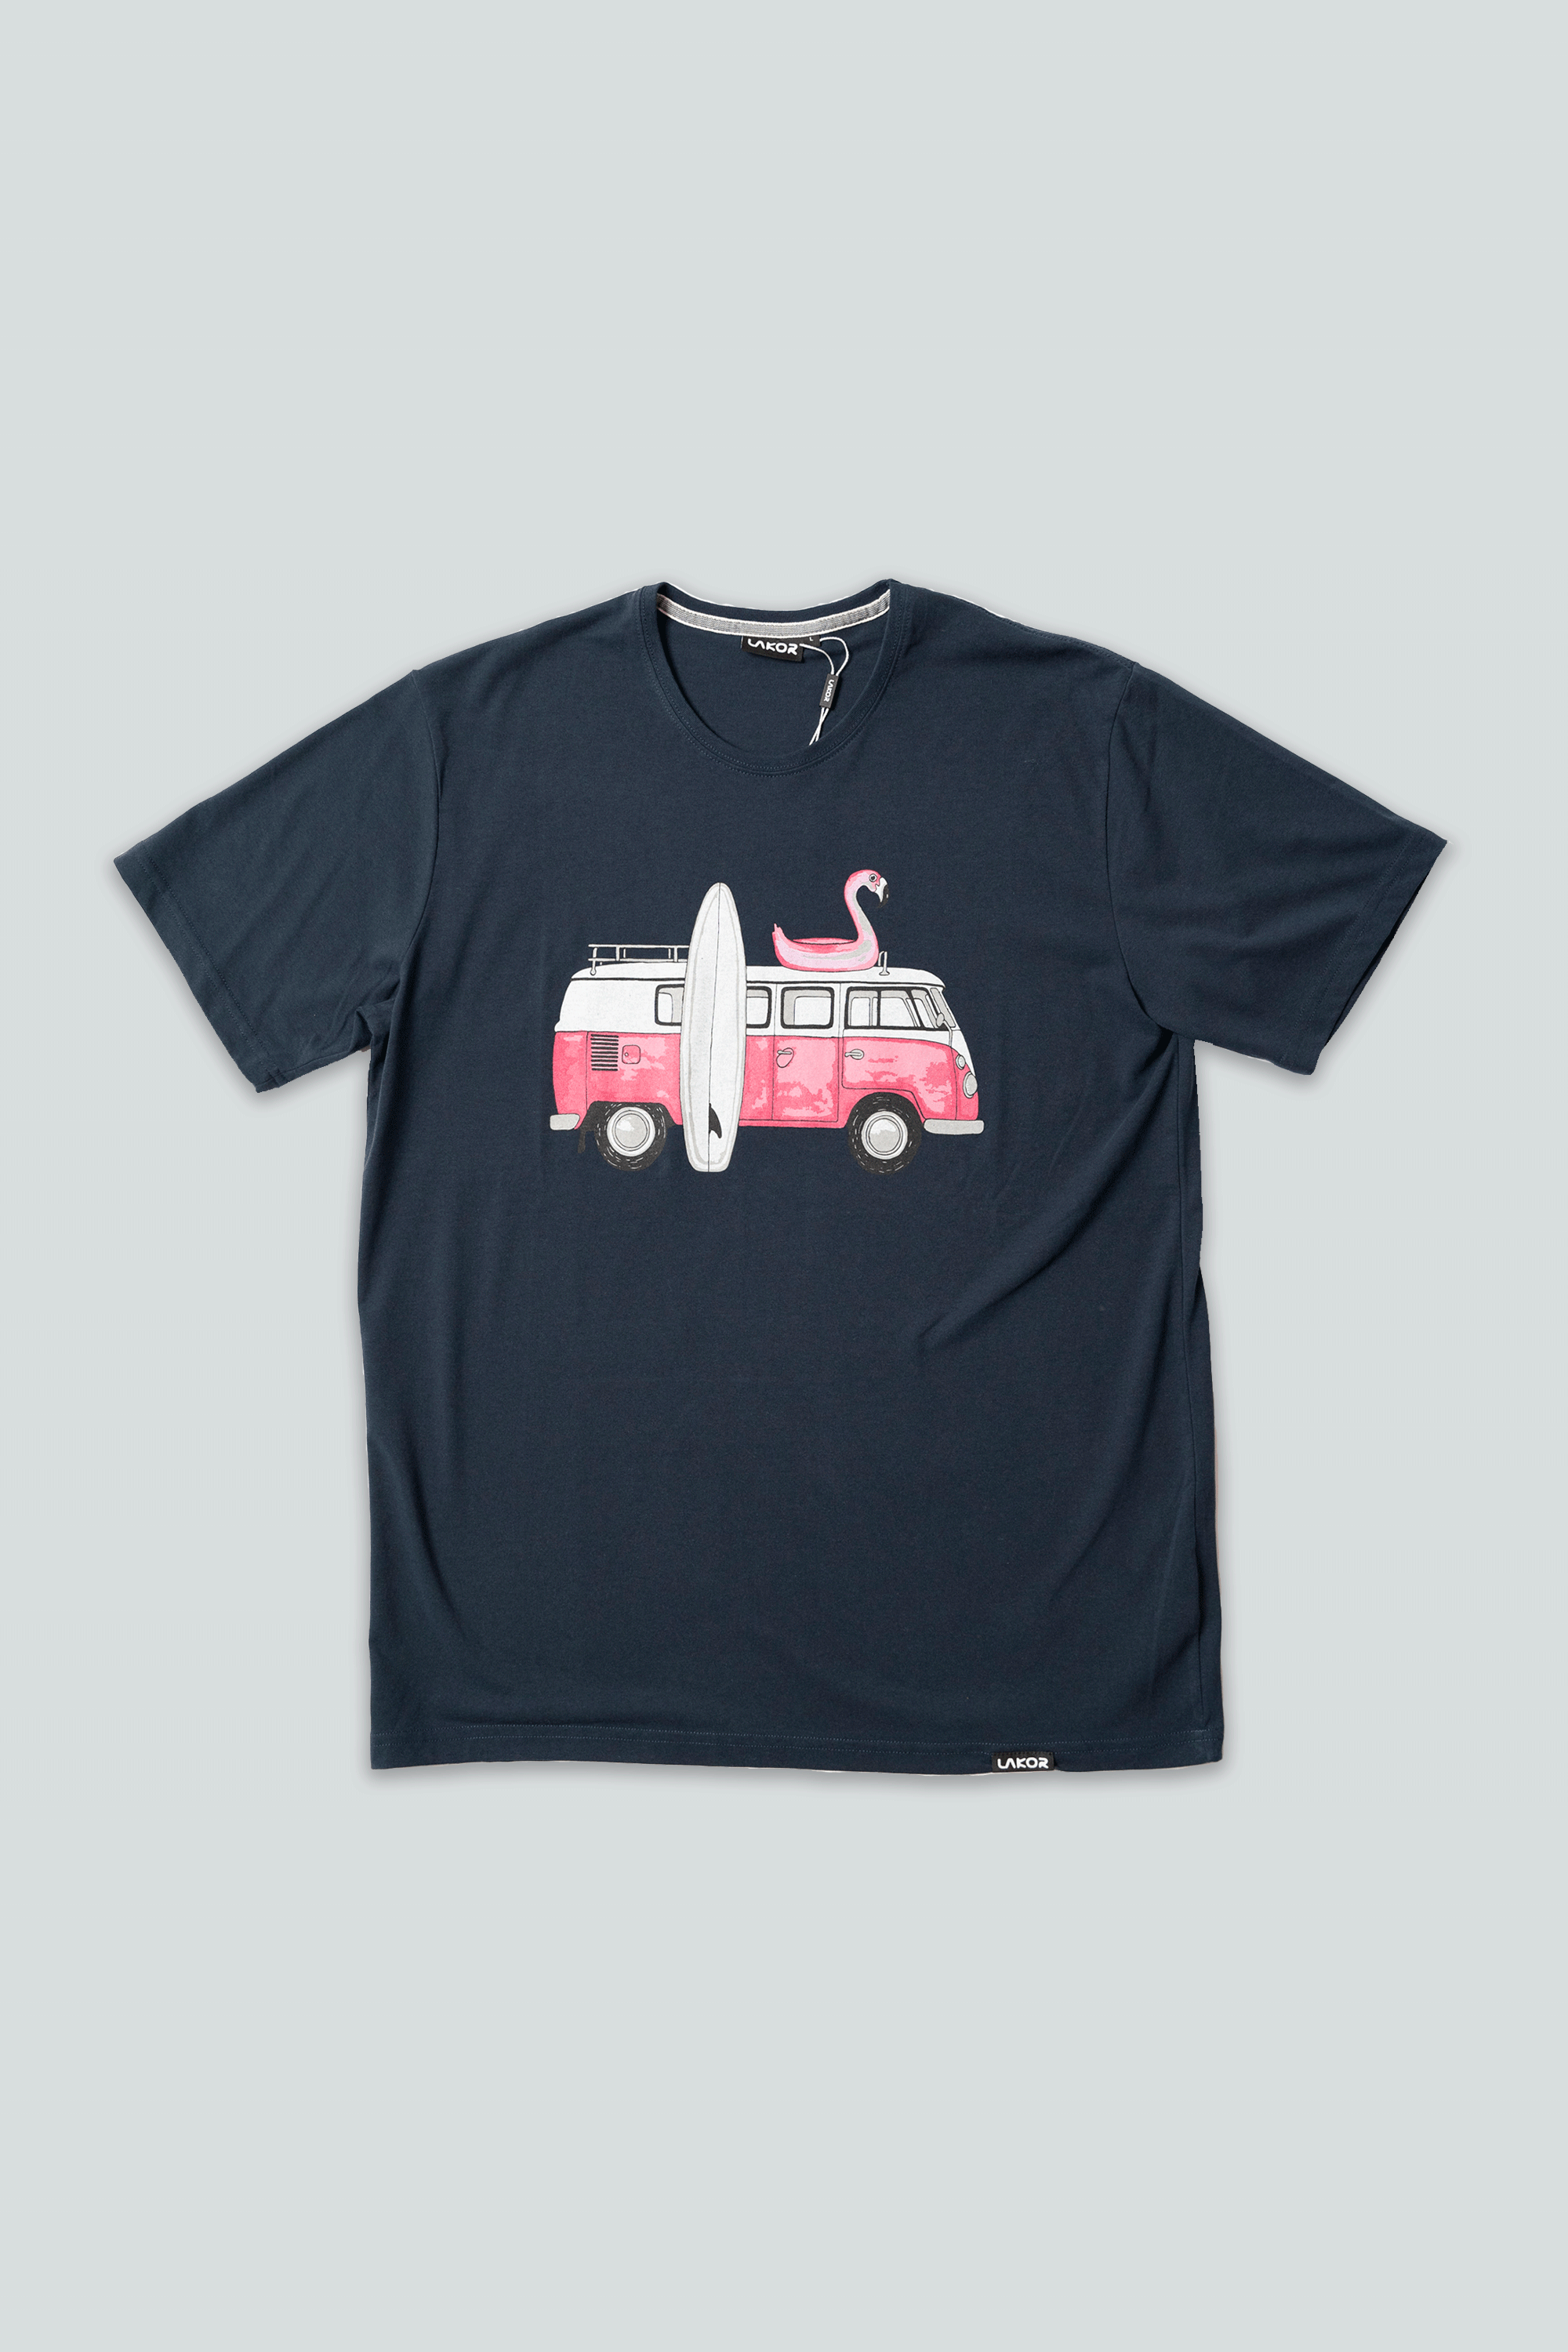 Pink Van T-shirt